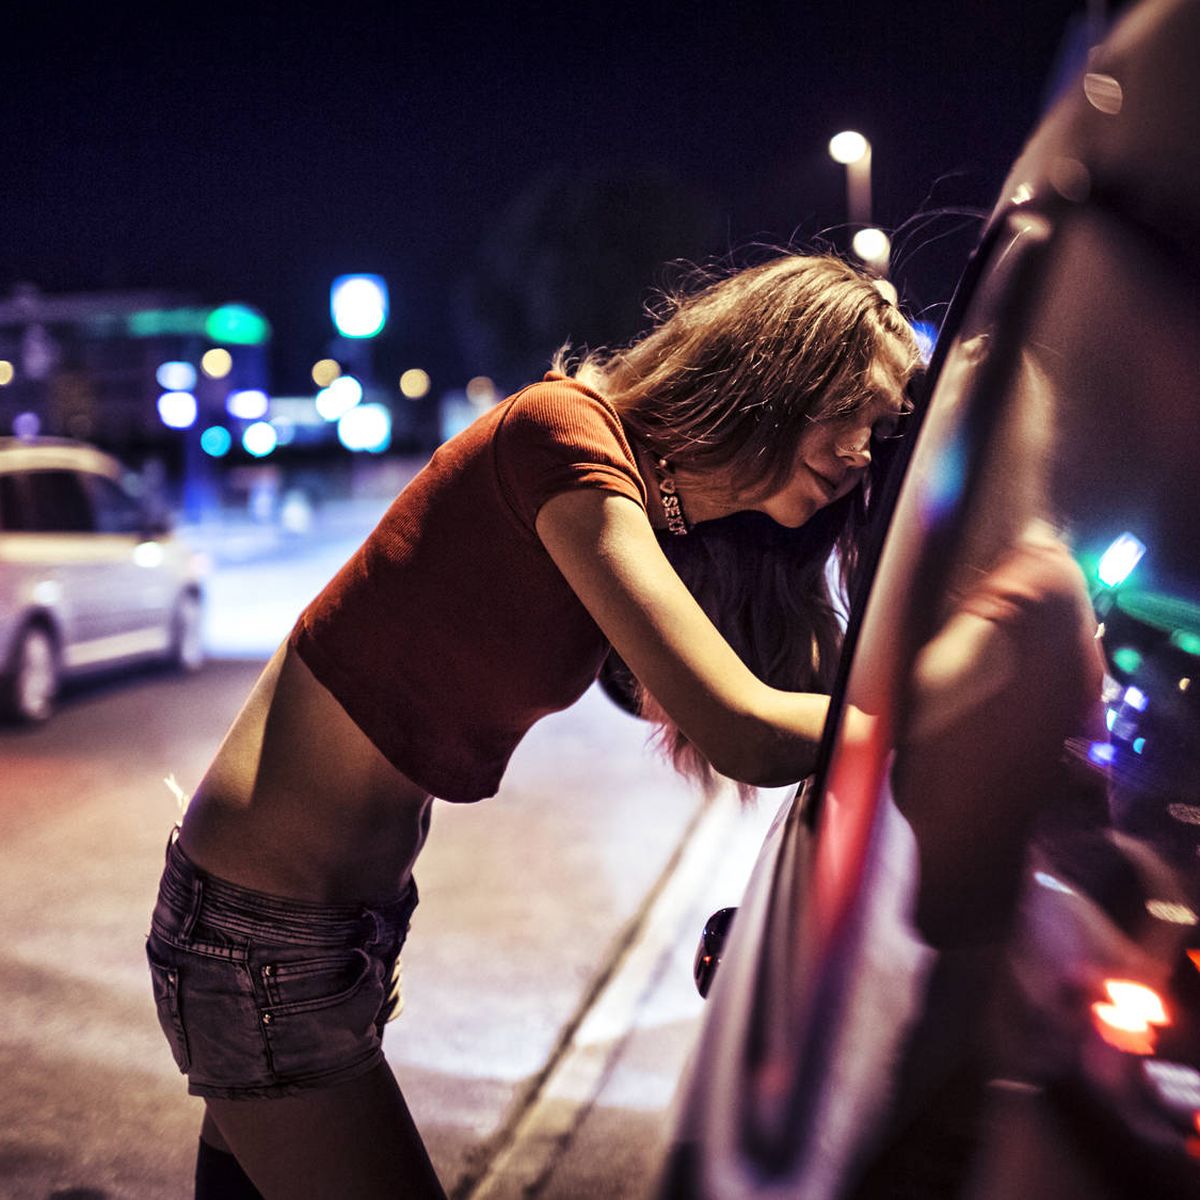 Porno Casero De Jovencitas Borrachas Y Dormidas - Millennials' y puteros: por quÃ© los clientes de la prostituciÃ³n son cada  vez mÃ¡s jÃ³venes